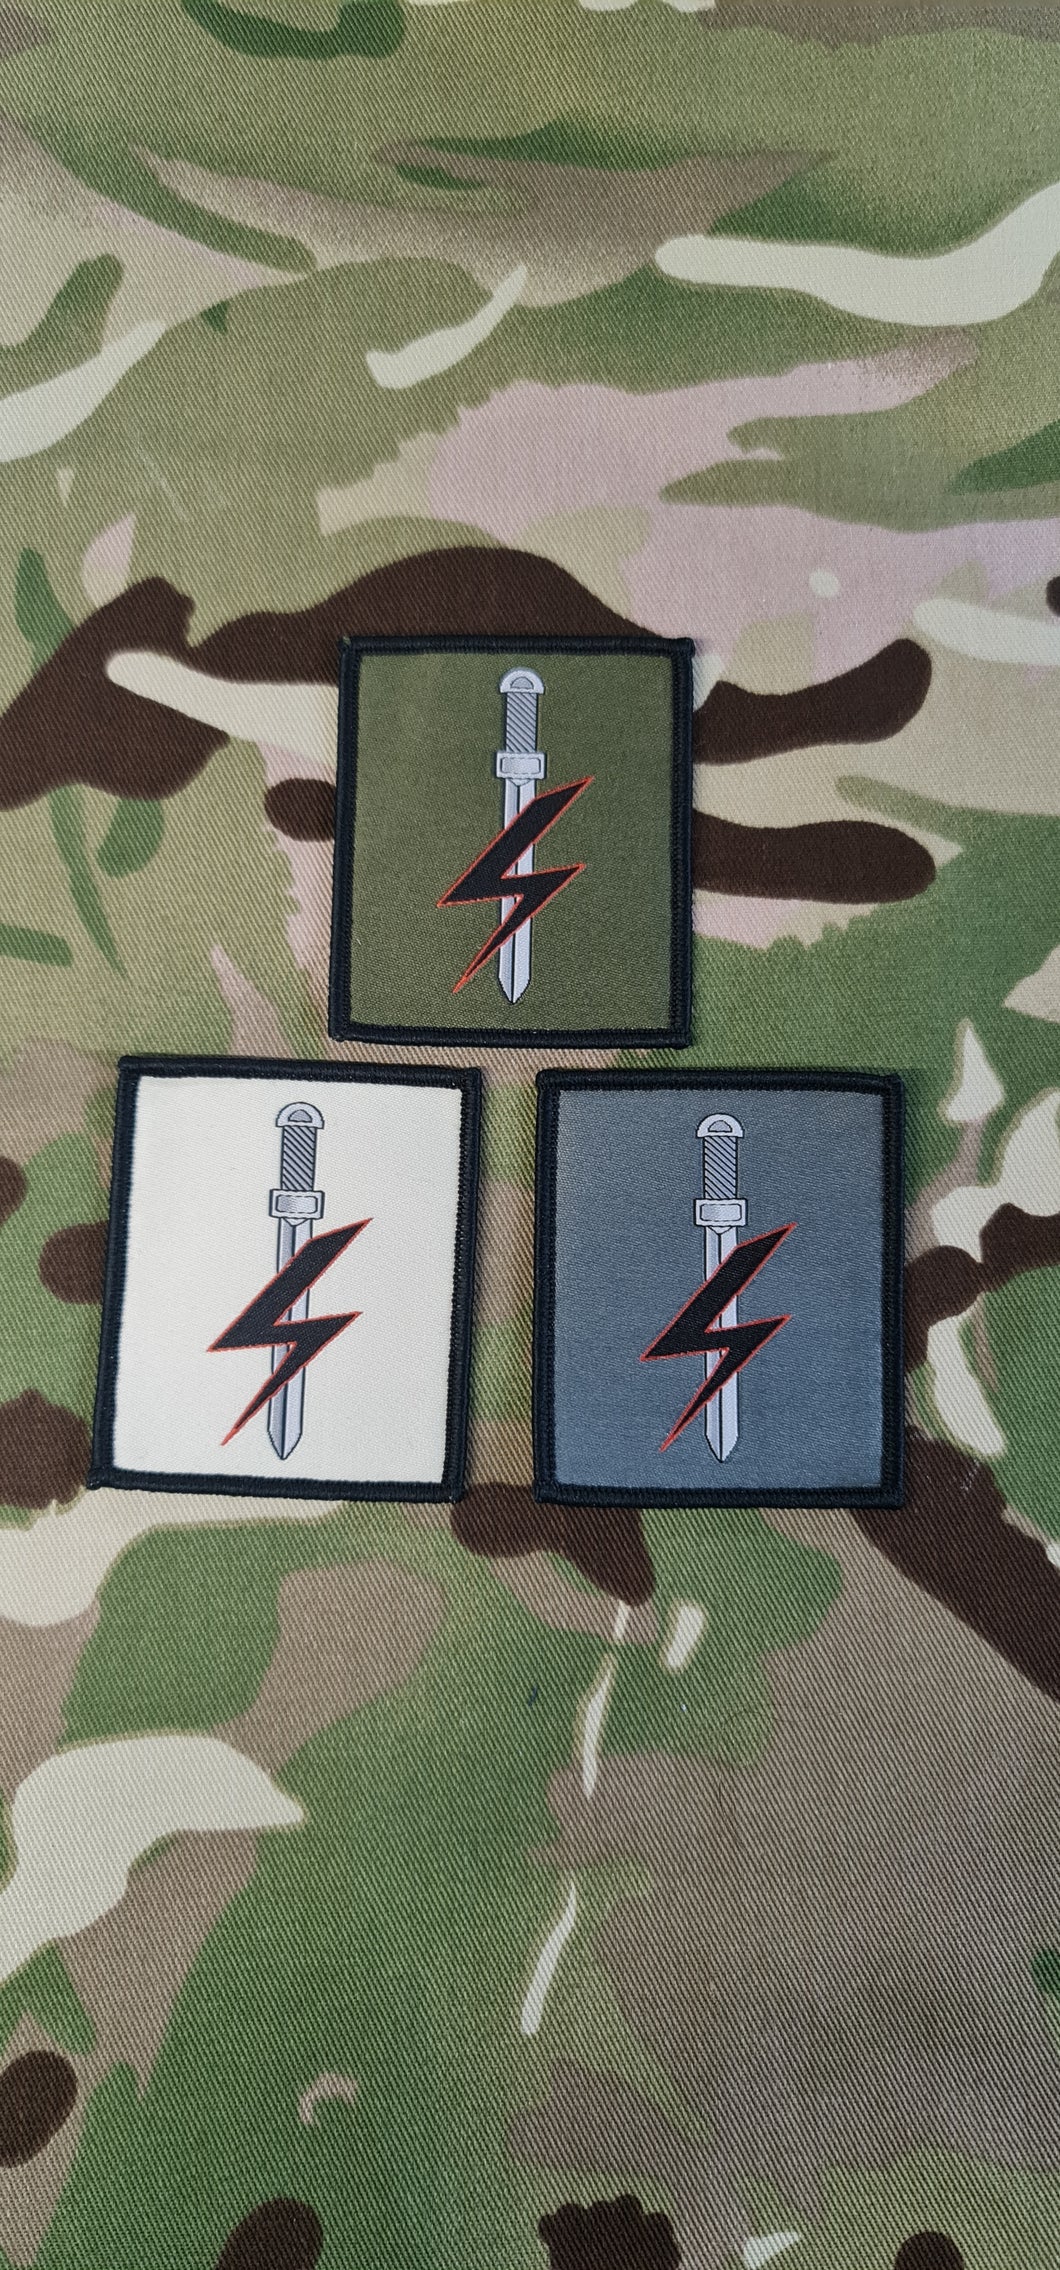 1 Para / SFSG Tactical Recognition Flash / TRF / DZ Badge / Patch